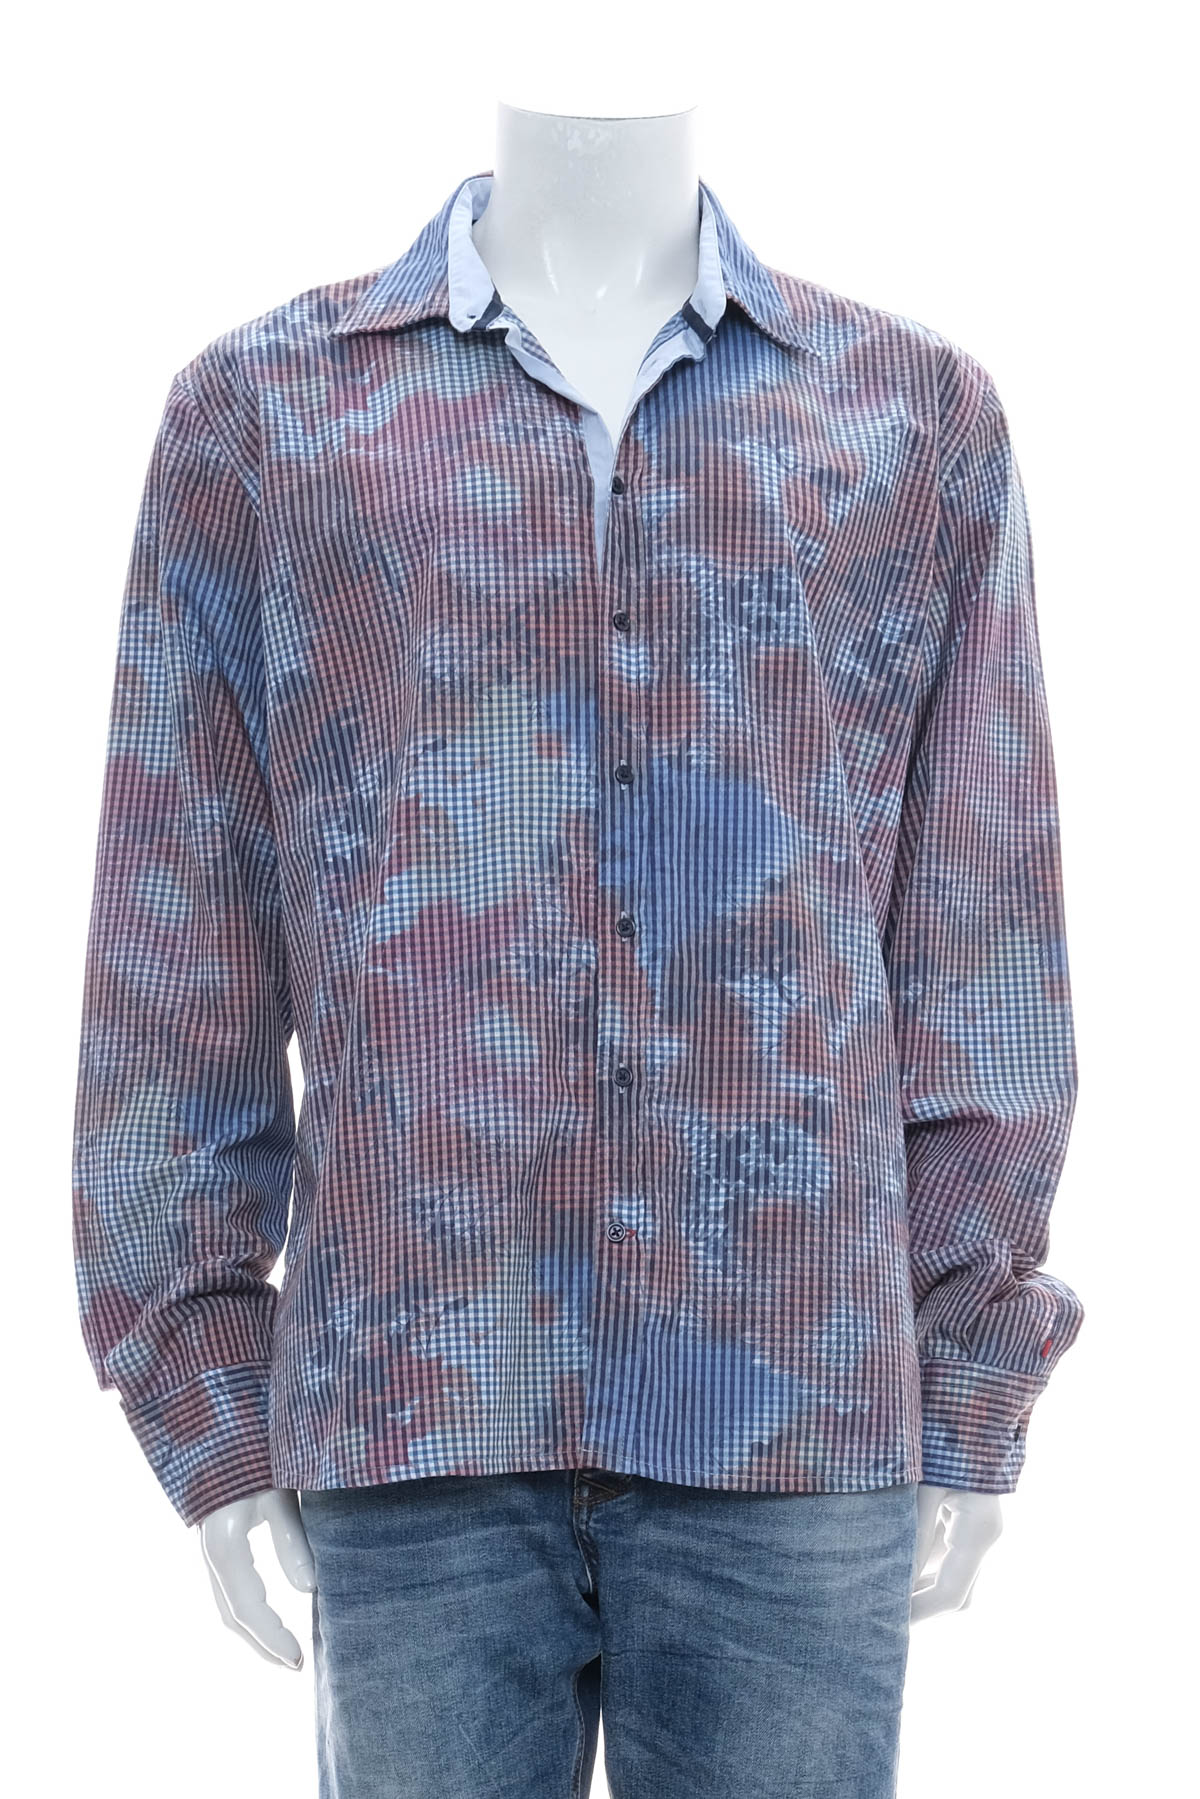 Ανδρικό πουκάμισο - Pure by H.TICO - 0